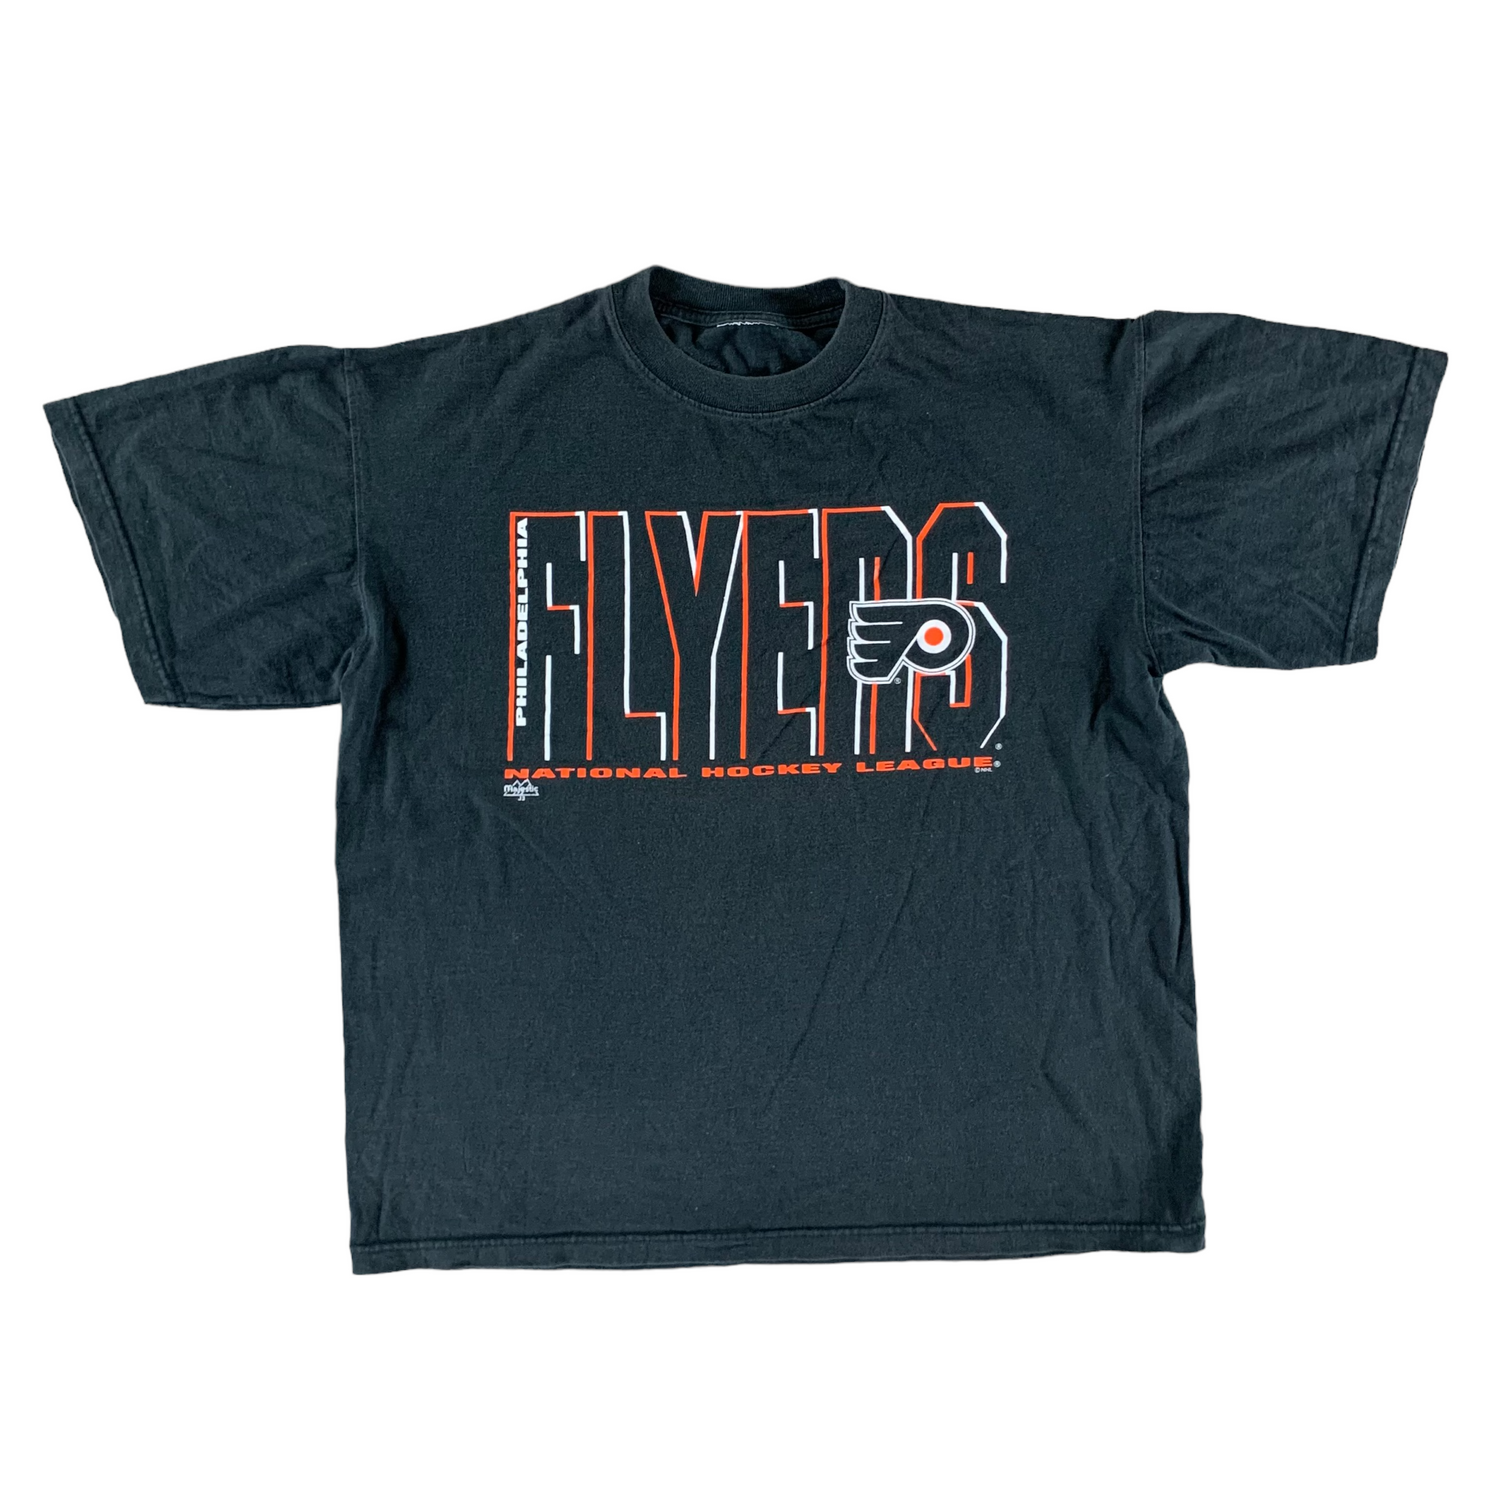 Vintage 1990s Philadelphia Flyers T-shirt size XL